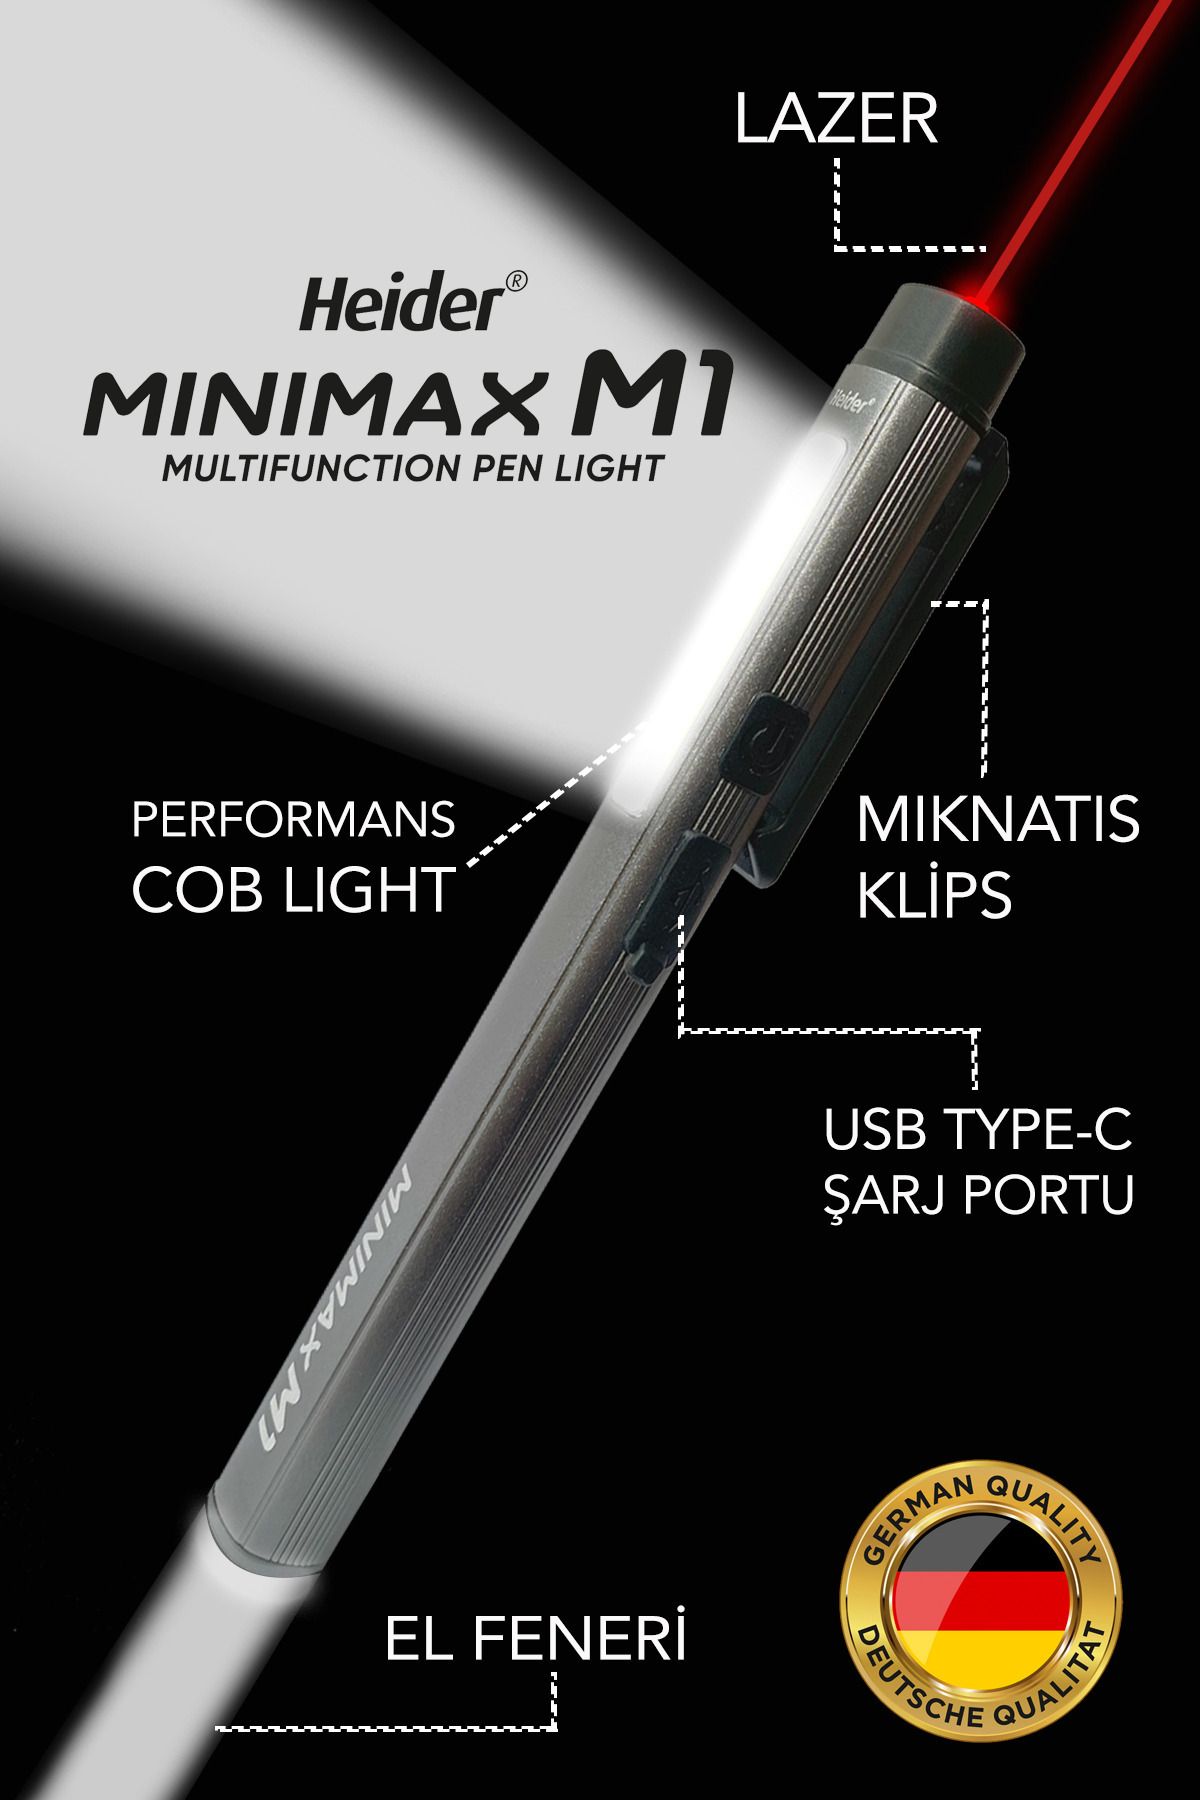 Heider Minimax M1 (YENİ) Özel Metal Tasarım 3 Fonksiyonlu (Lazer + 50 m2 Gövde Lambası + El Feneri) CE+RoHS